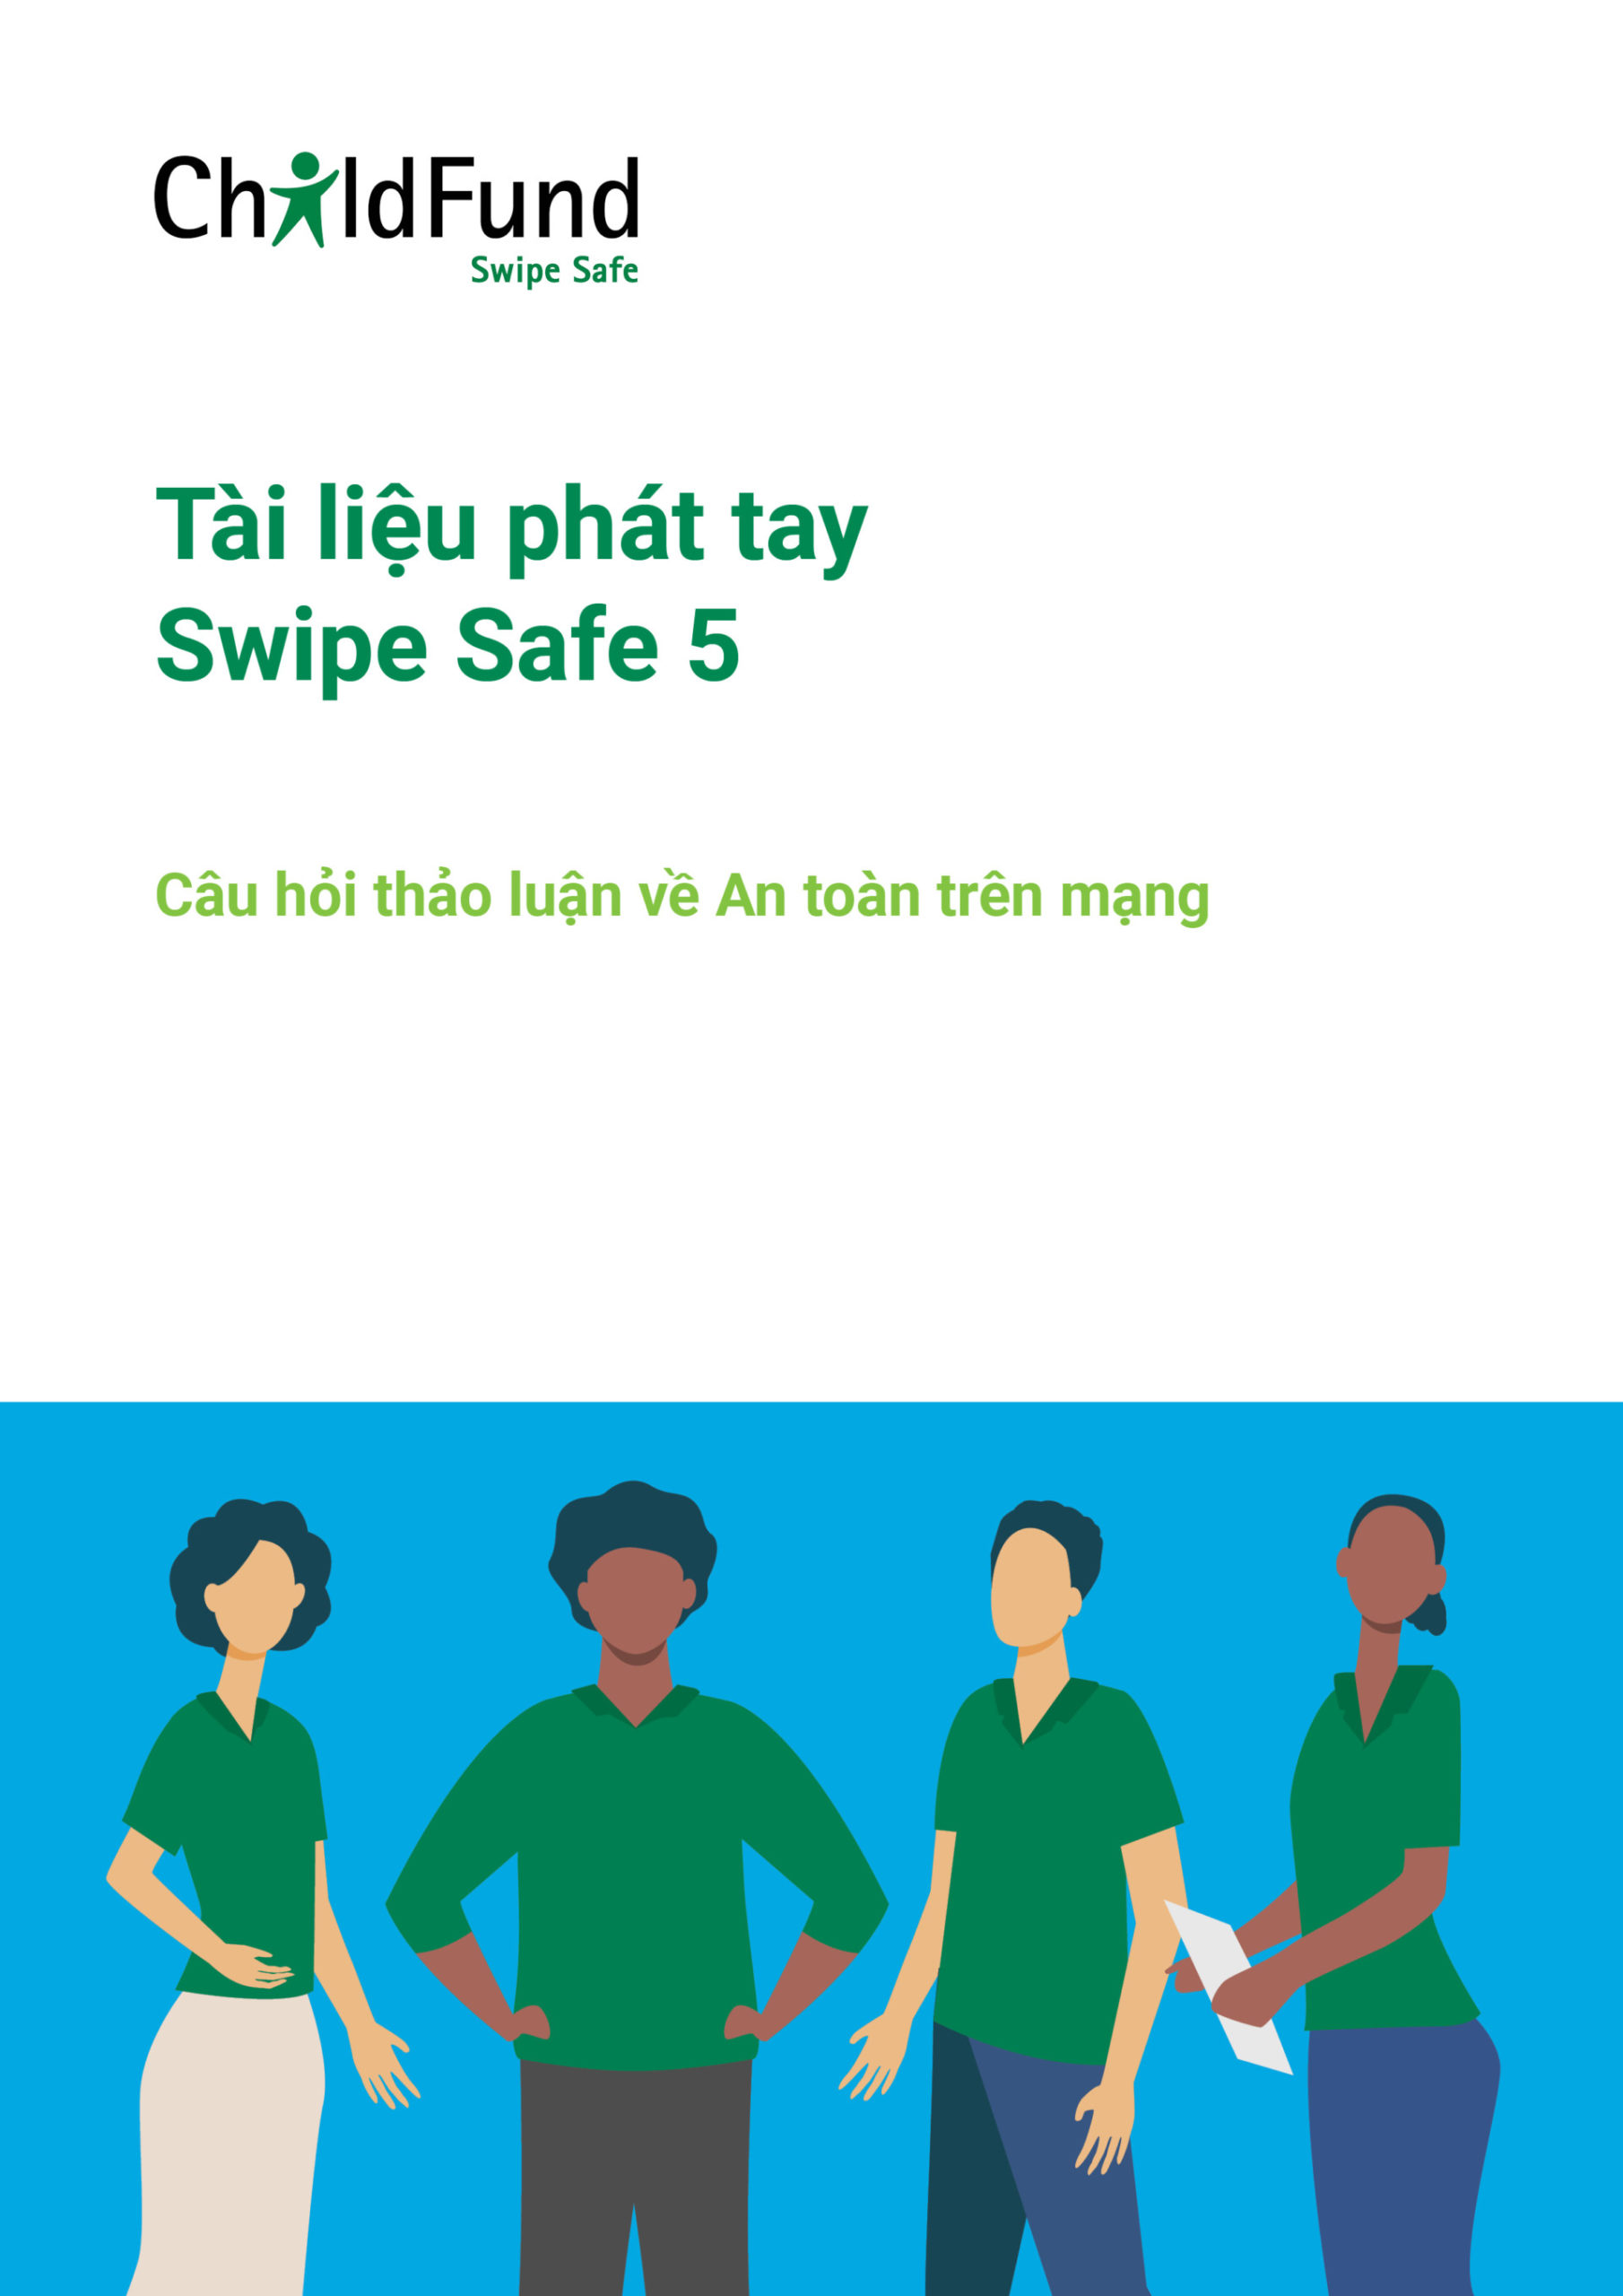 IEC – Tài liệu phát tay Swipe Safe 5